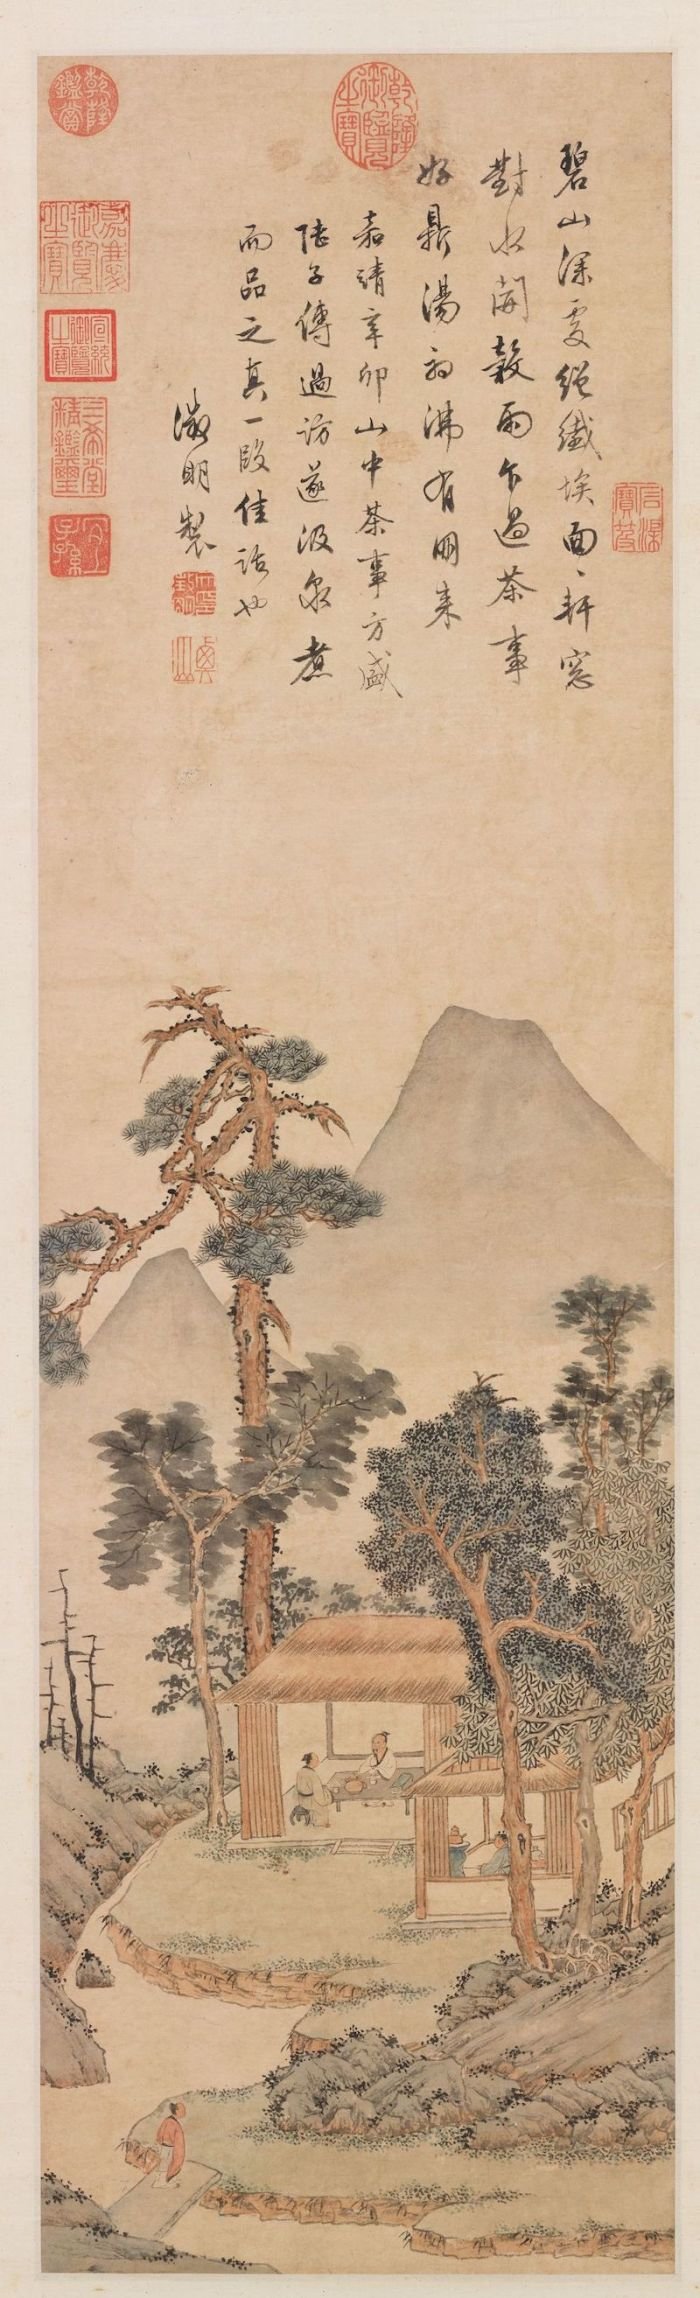 文徵明《品茶图》轴，台北故宫博物院藏